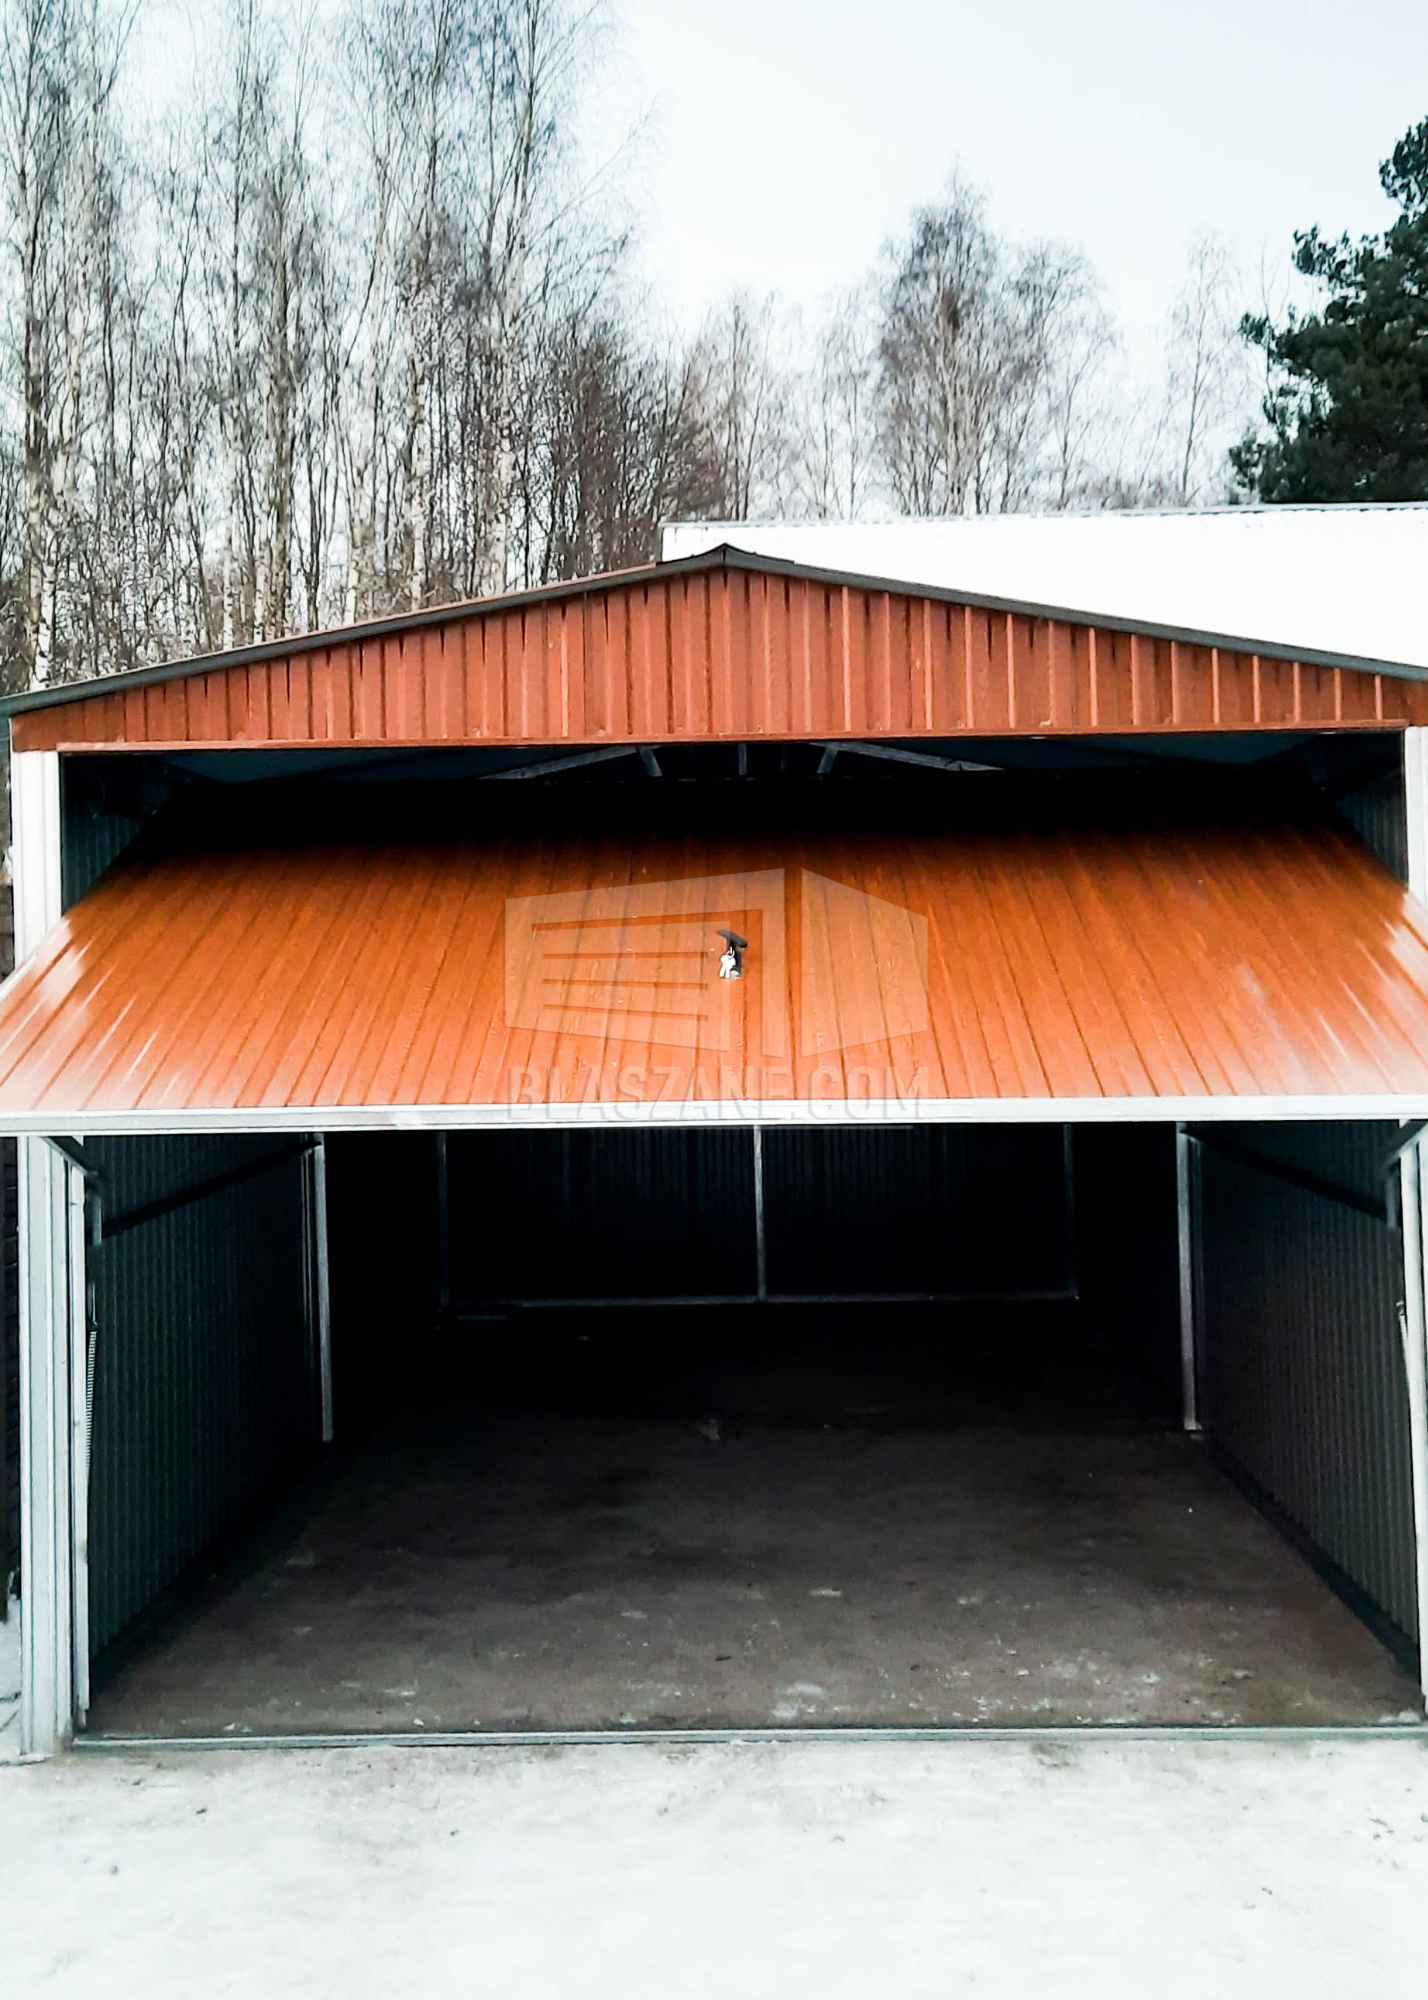 Garaż Blaszany 3x5 - Brama uchylna - jasny brąz dach dwuspadowy BL174 Piła - zdjęcie 6